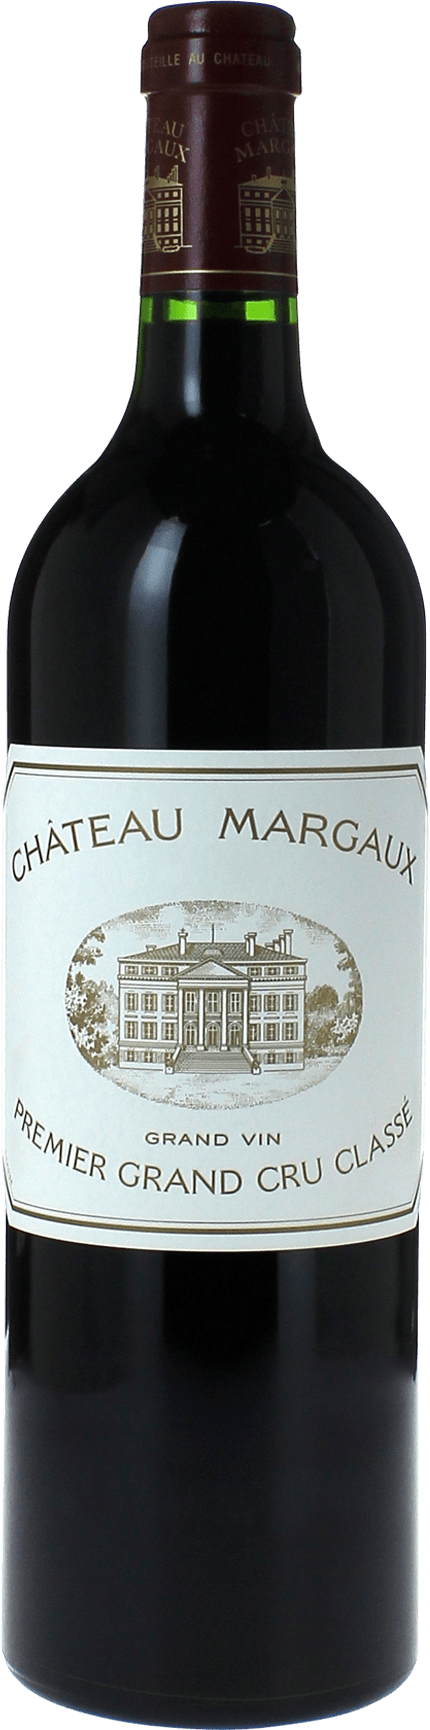 Margaux 2016 1er Grand cru class Margaux, Bordeaux rouge